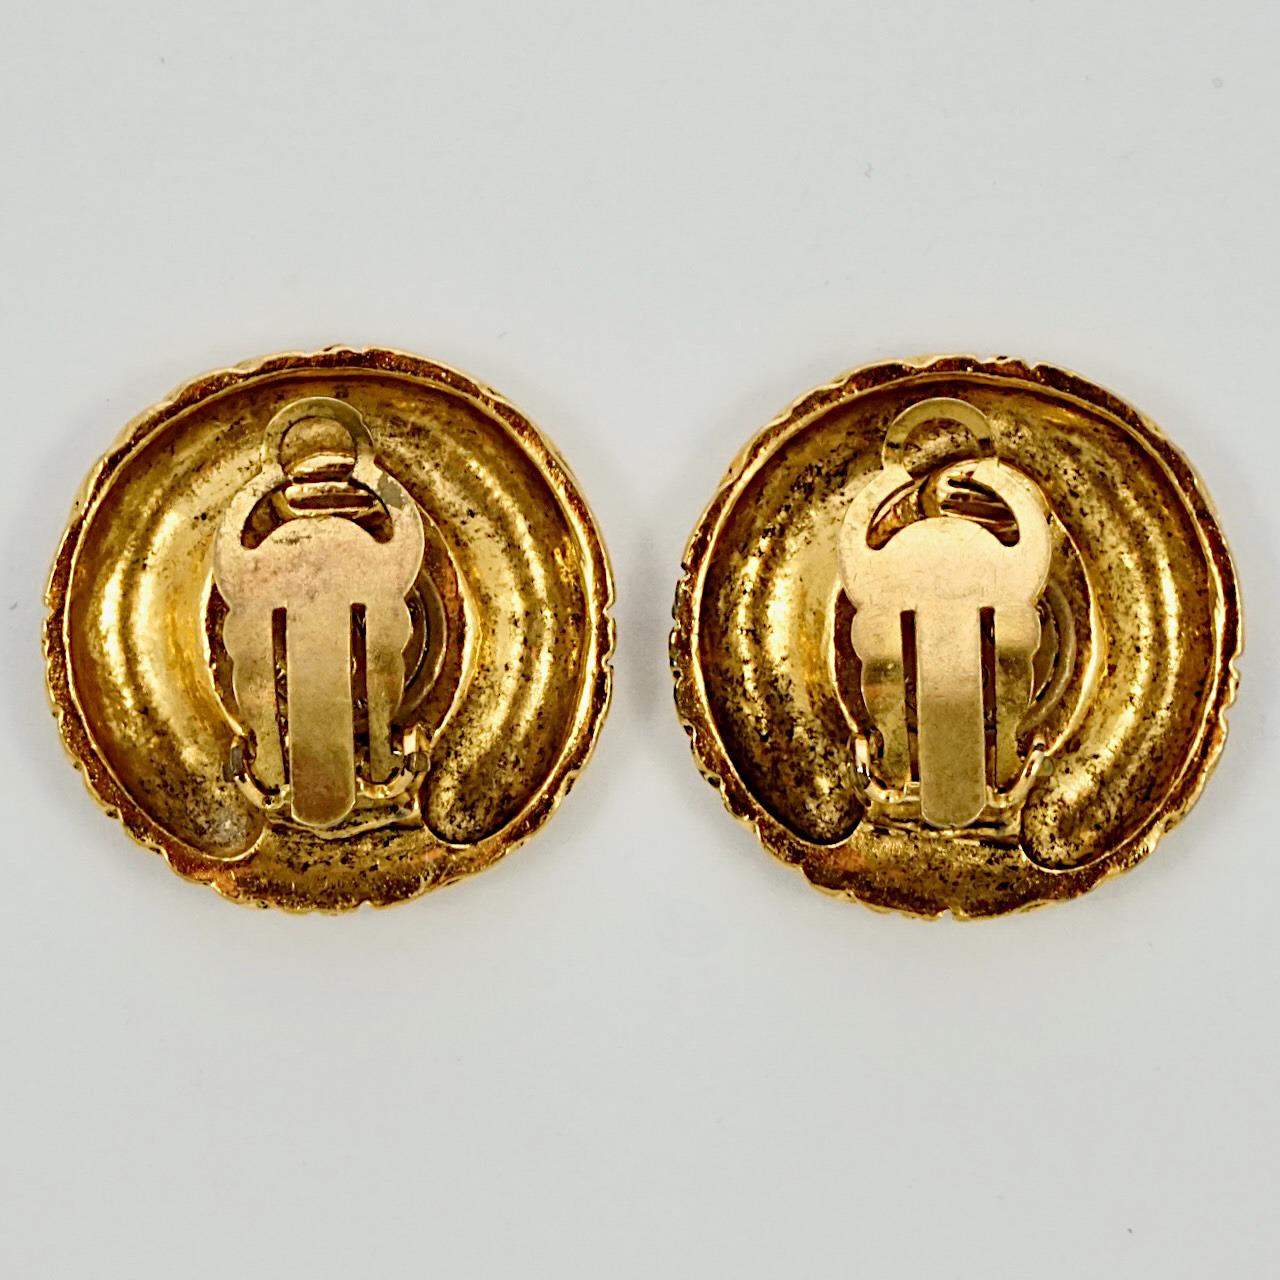 Fabuleuses boucles d'oreilles Chanel en plaqué or, avec le logo Chanel entouré d'un motif strié. Diamètre de mesure 2,7 cm / 1 pouce. La dorure est légèrement usée.

Ces magnifiques boucles d'oreilles de Chanel datent des années 1970.
